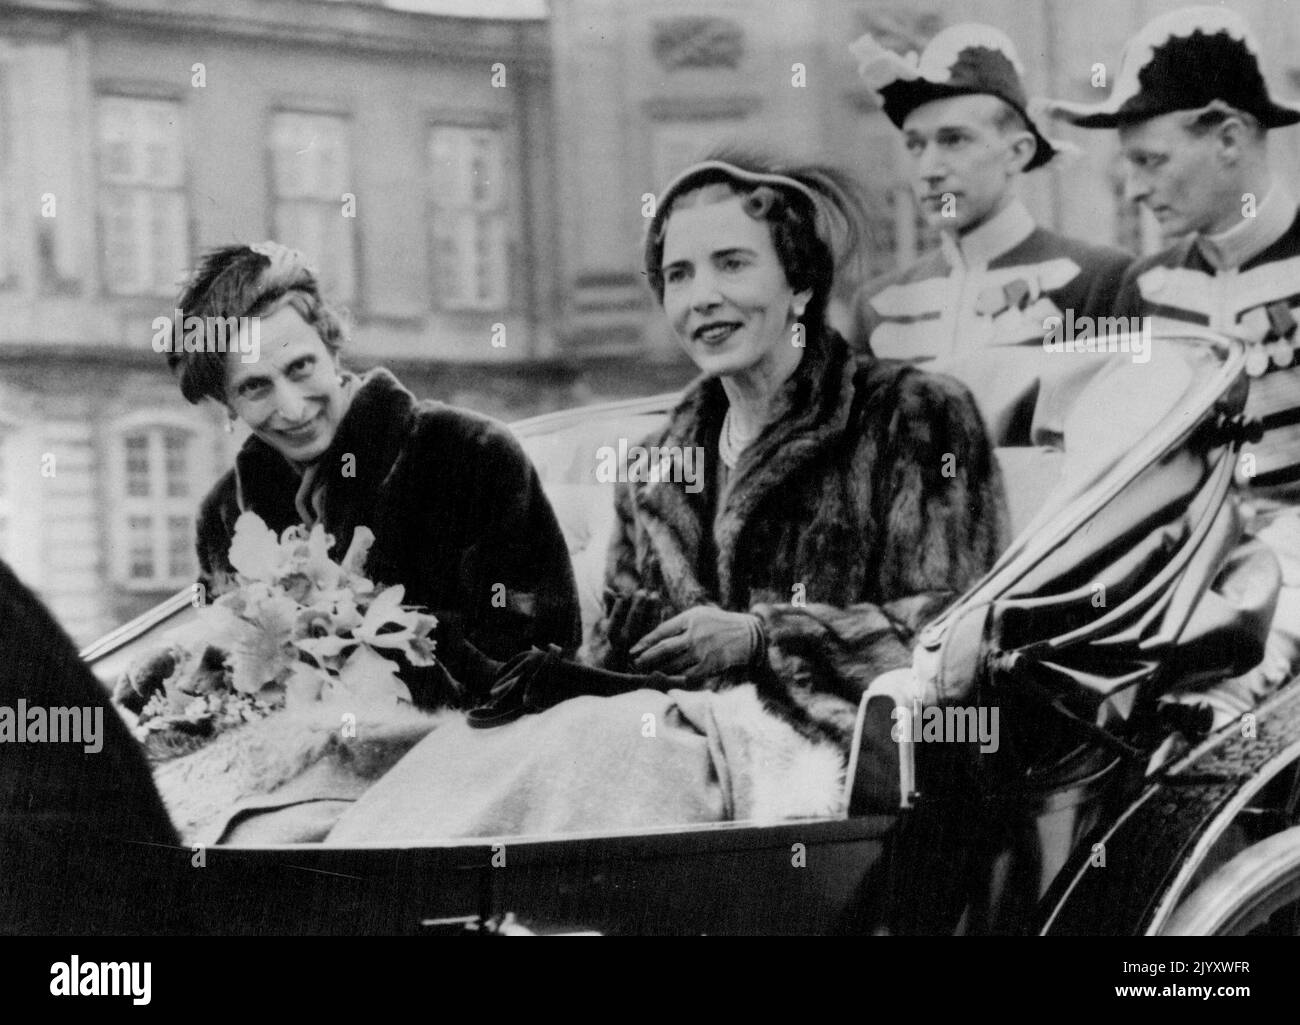 Reise der Königinnen Königin Louise von Schweden (links) würdigt den Jubel aus der Menge, als sie mit Königin Ingrid von Dänemark in Einem Staatswagen fährt. Königin Louise und König Gustaf Adolf von Schweden besuchen die dänische Königsfamilie in Kopenhagen. 26. März 1952. Stockfoto